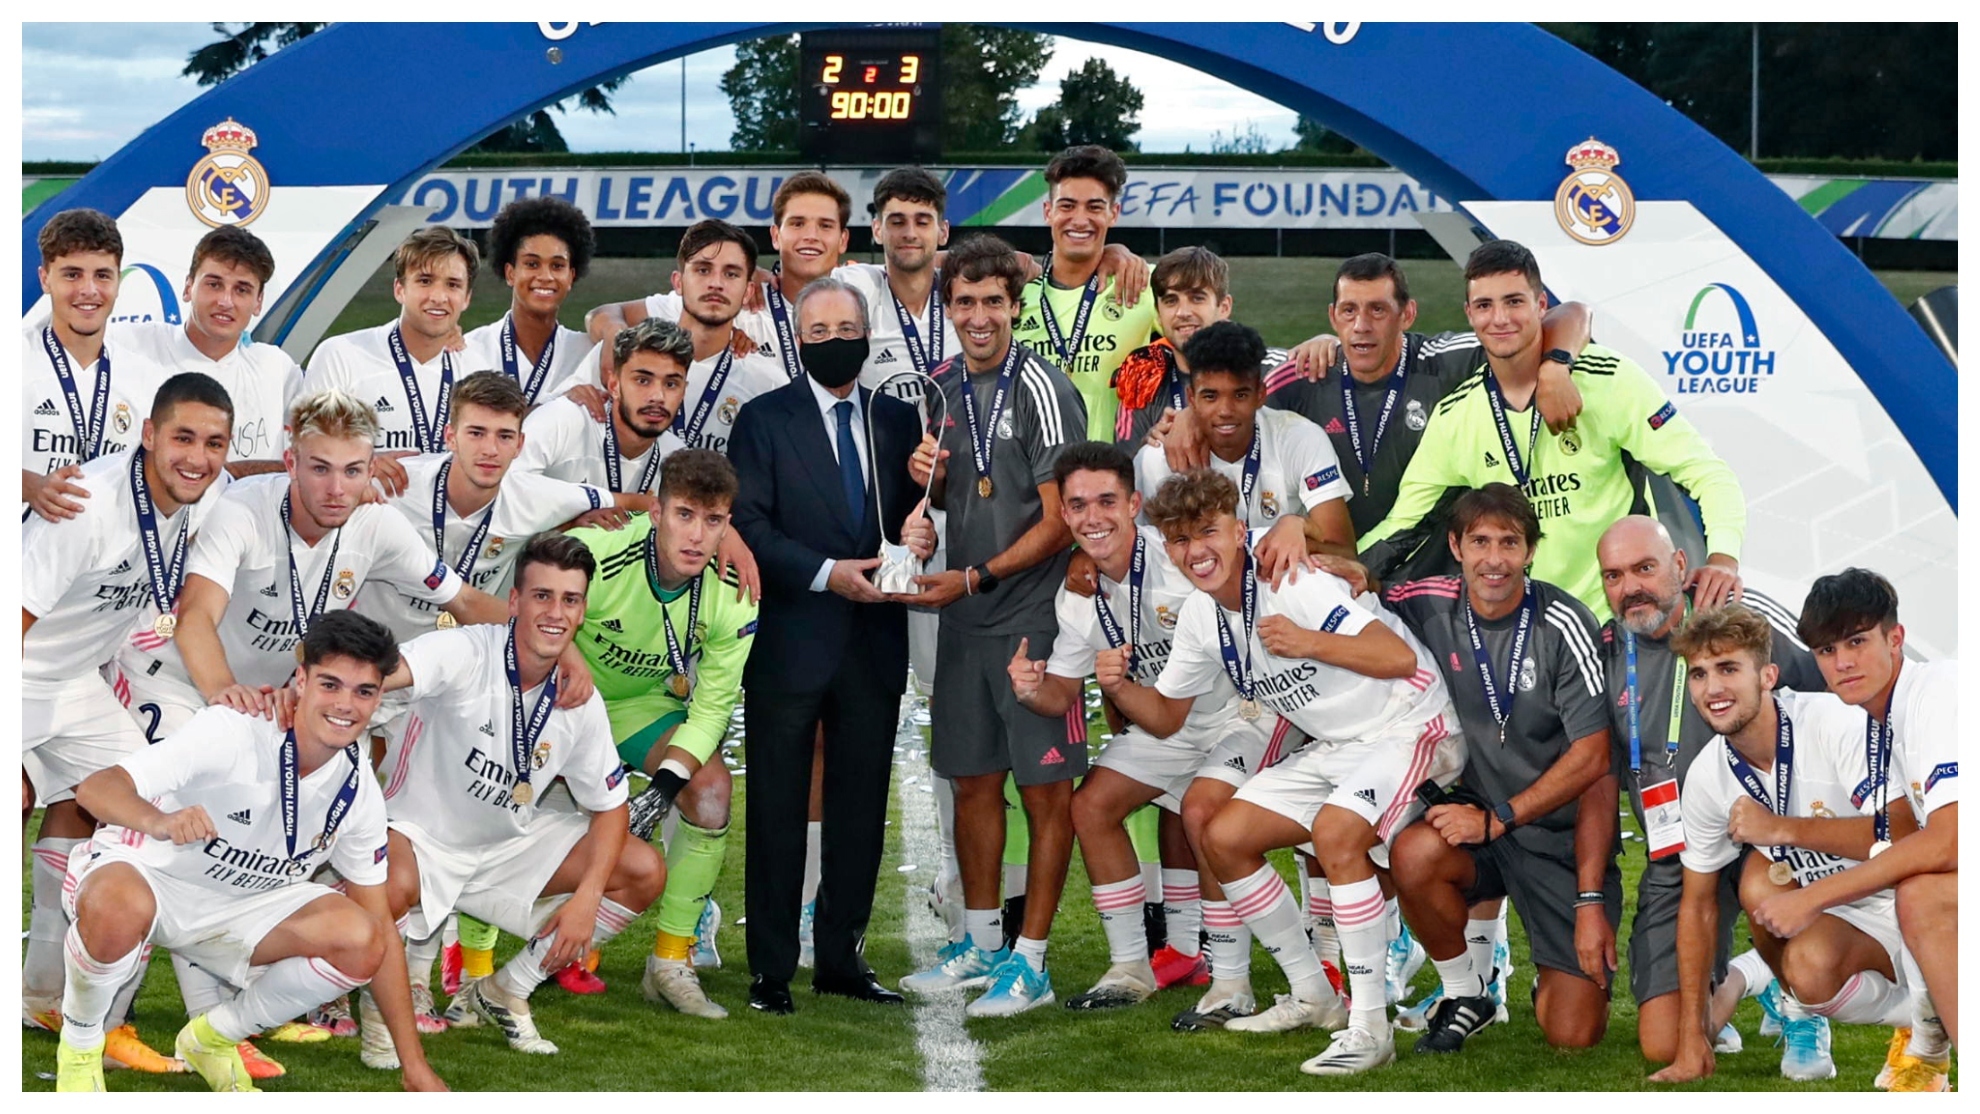 El Real Madrid campeón de la Youth League en la edición 19-20.